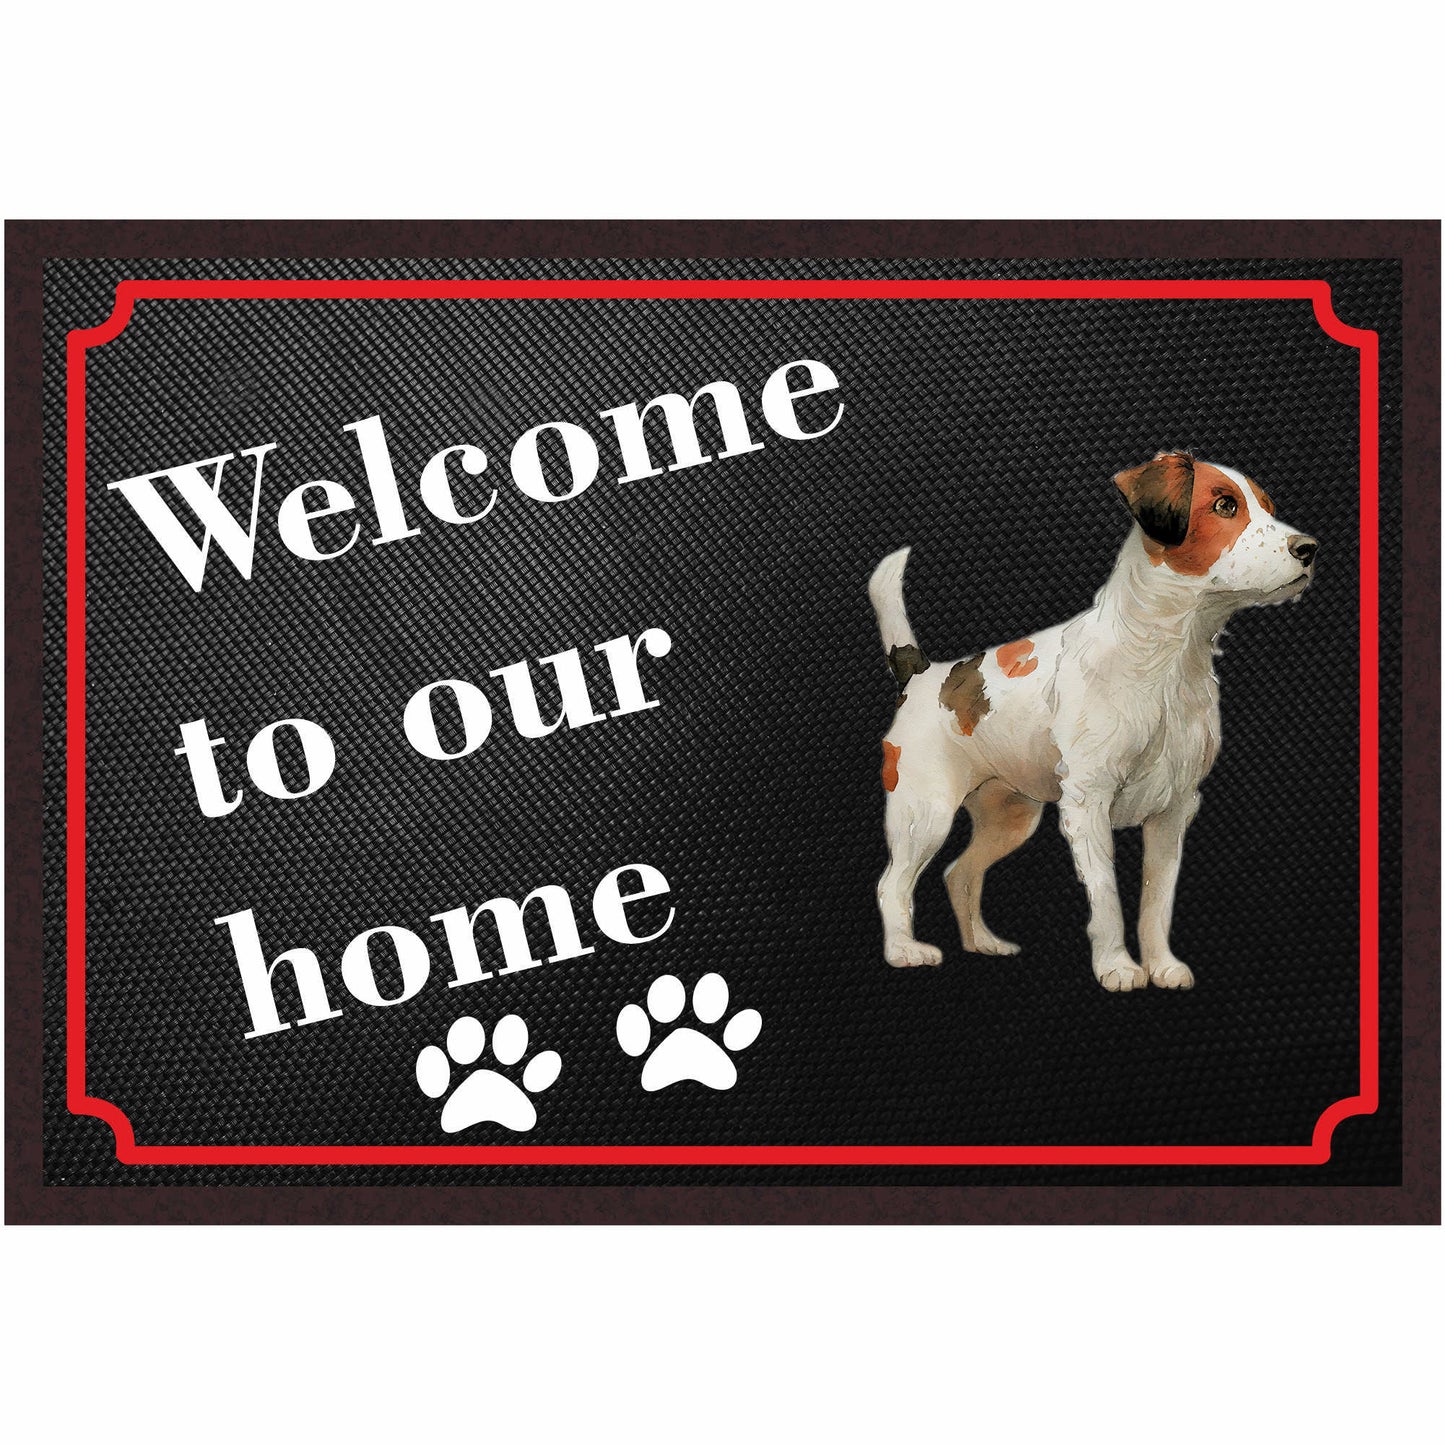 Fussmatte Hund - Jack Russell Terrier - 50x35 cm mit lustigem Spruch